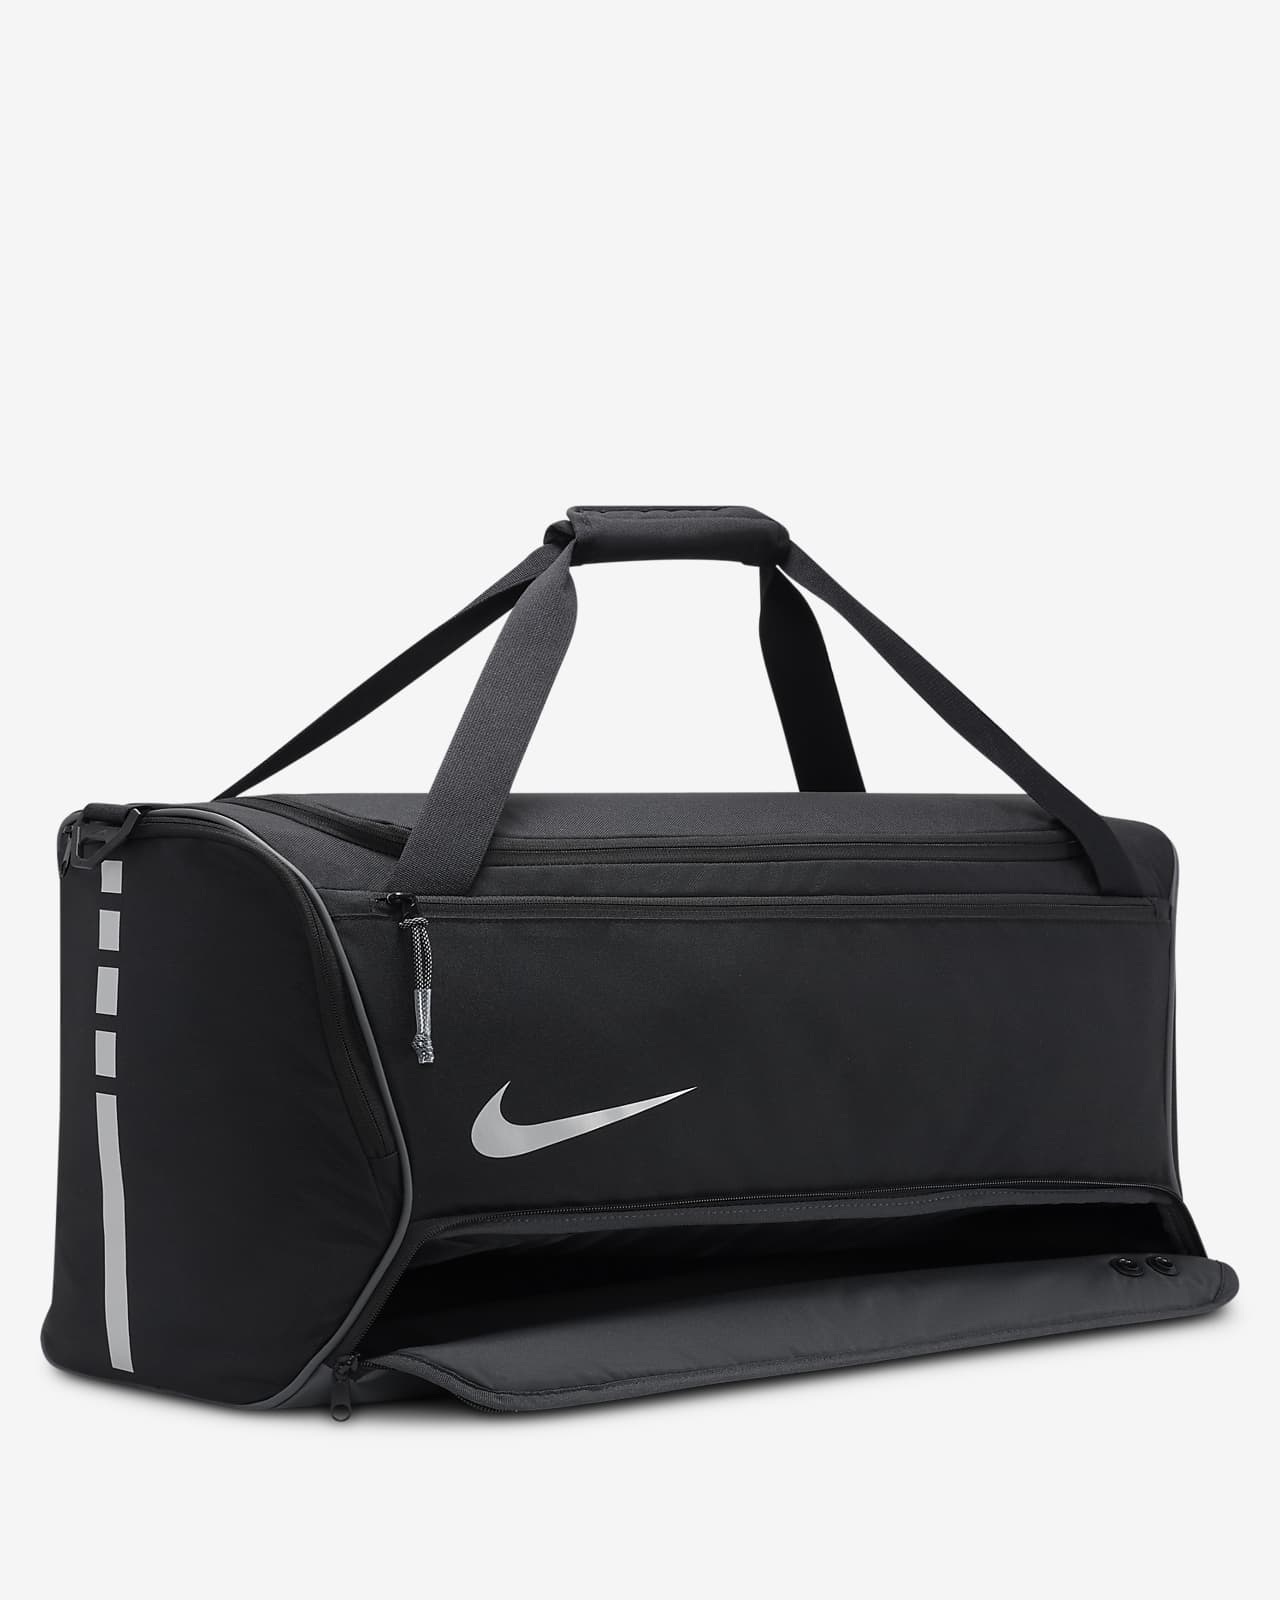 Nike Yoga Mat Bag (21L) Black - Toby's Sports